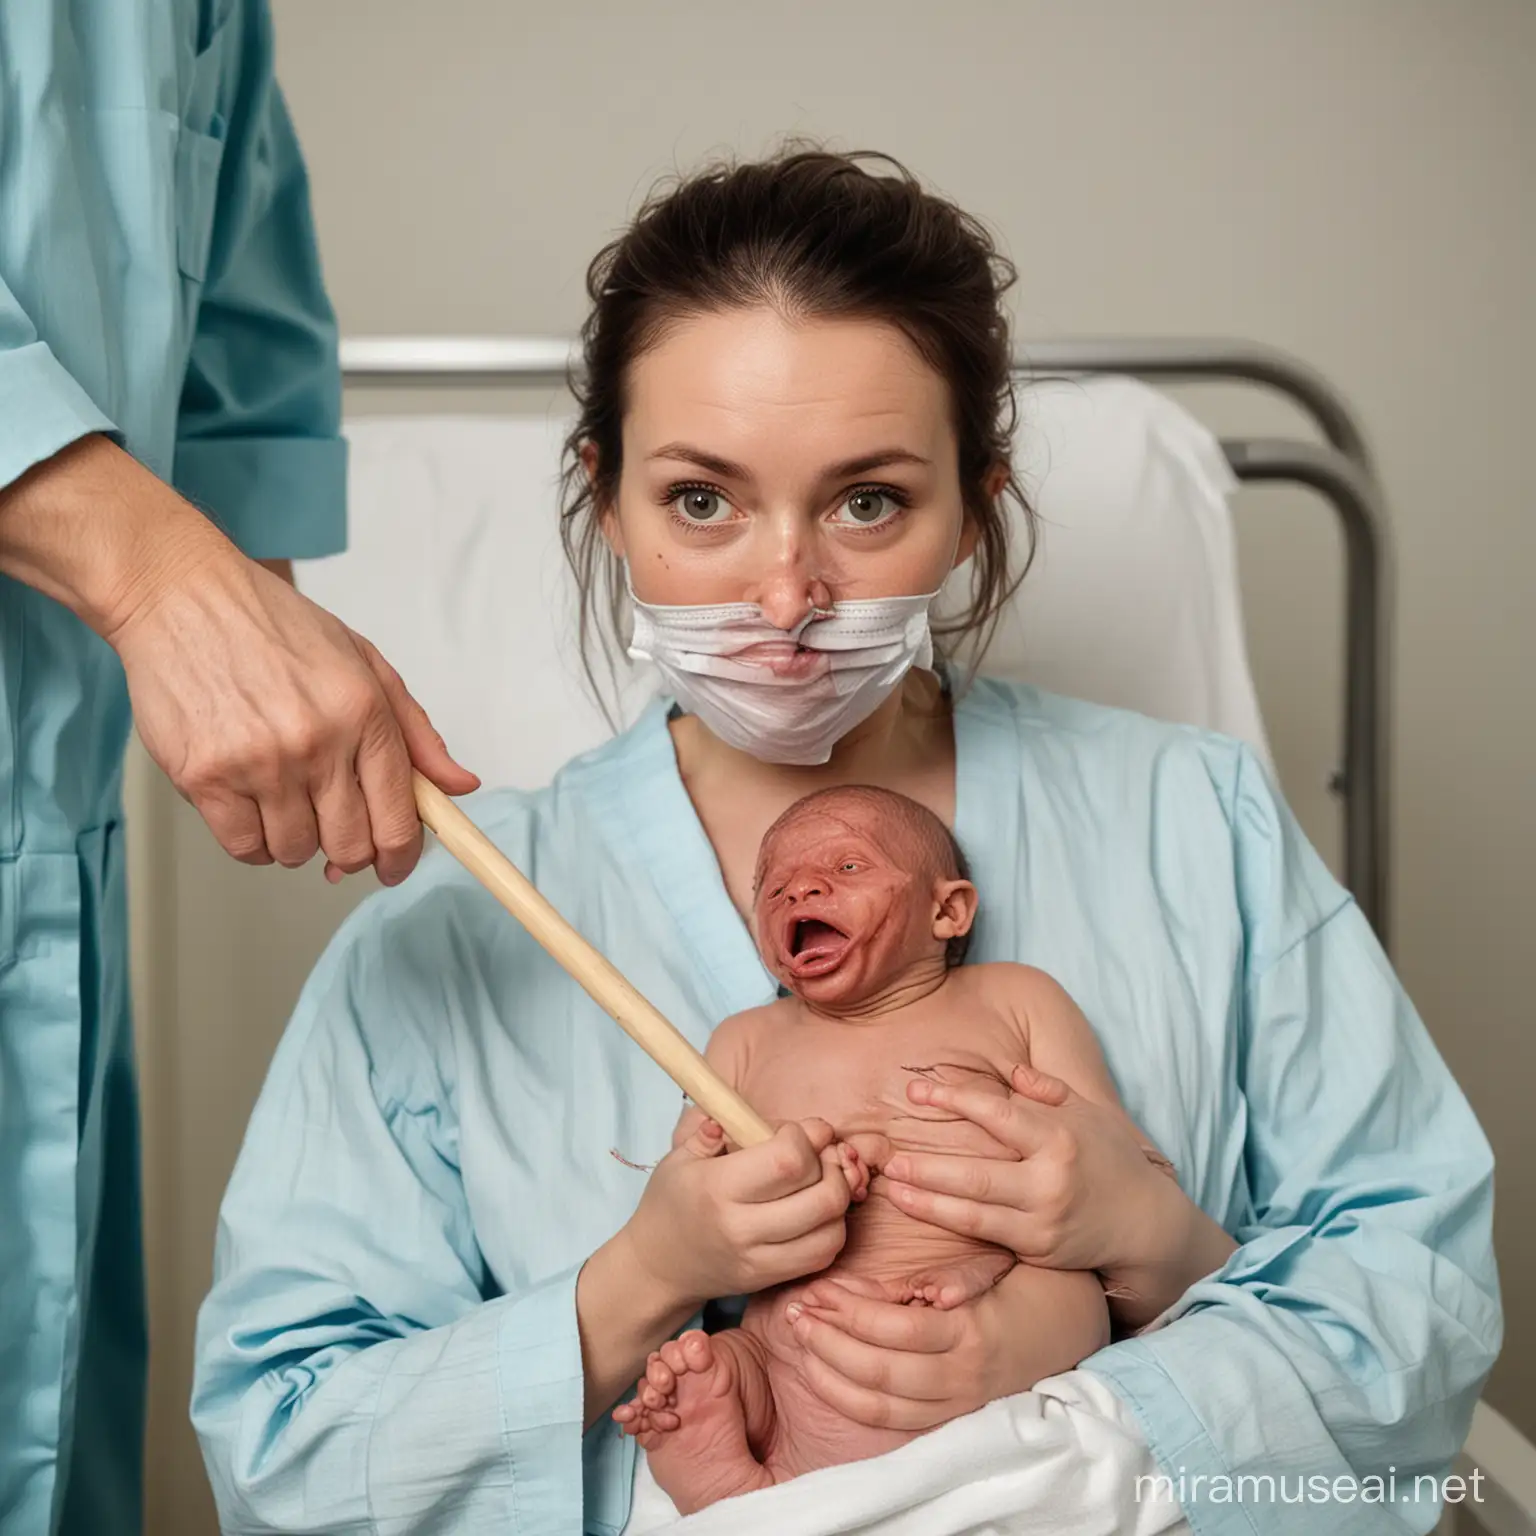 Doctor Examining Deformed Newborn in Maternity Ward